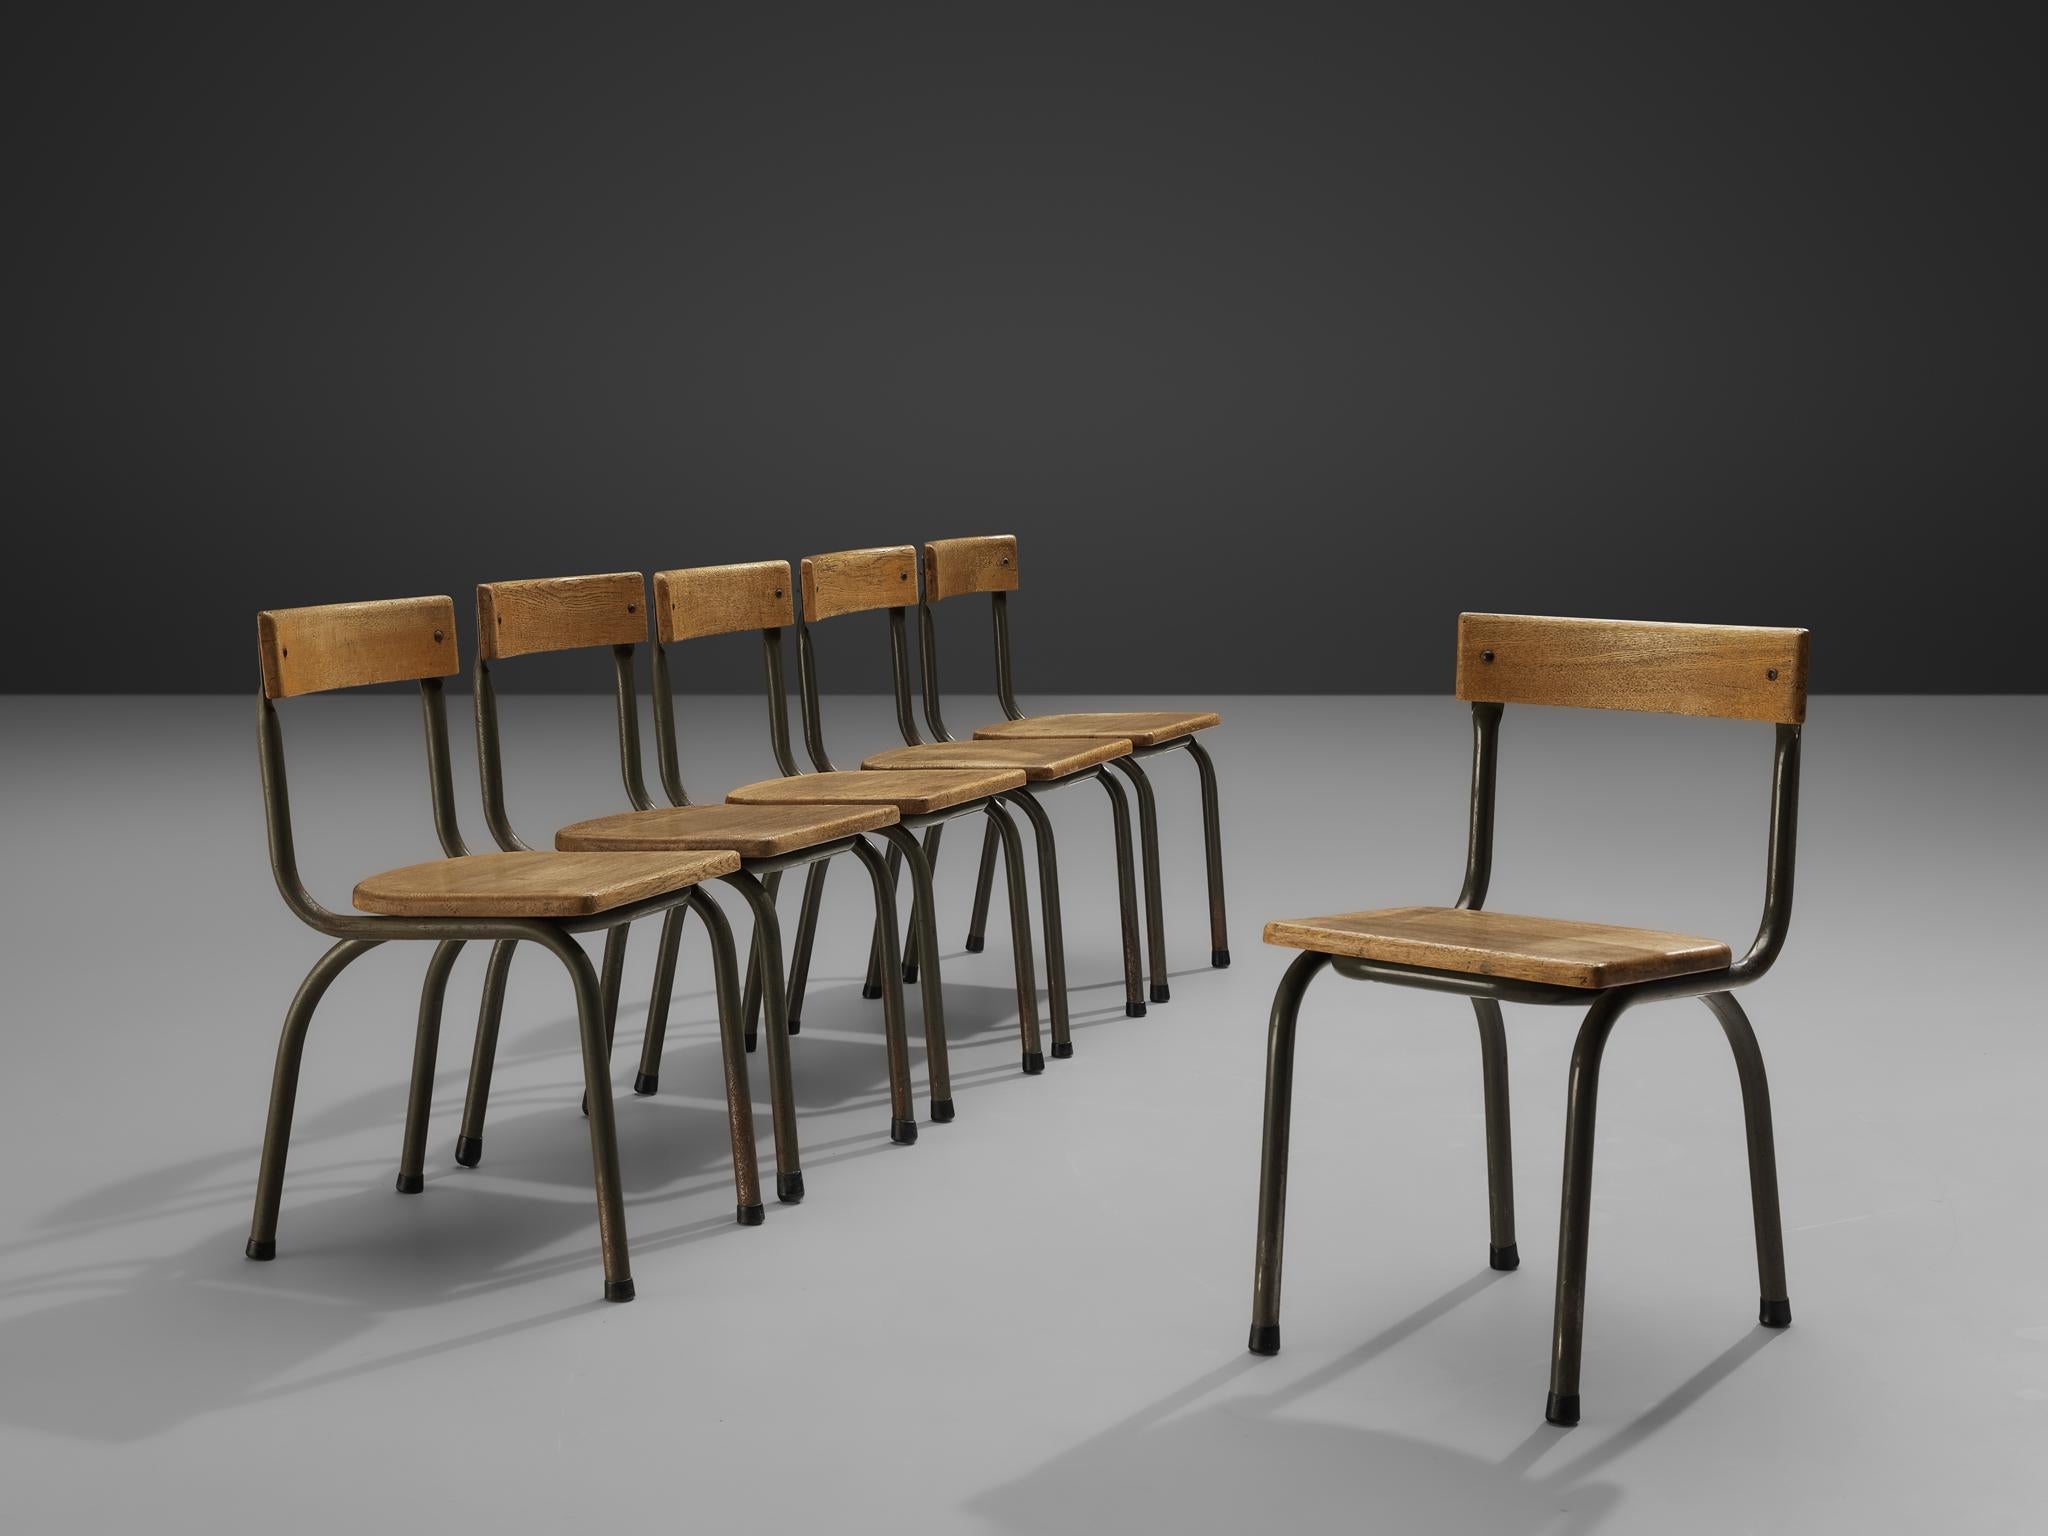 Willy Van Der Meeren pour Tubax, ensemble de six chaises, métal, chêne, Belgique, 1957.

Cet ensemble de chaises industrielles a été conçu par le designer belge Willy Van Der Meeren. Cet ensemble de chaises sobres, mais intéressantes et